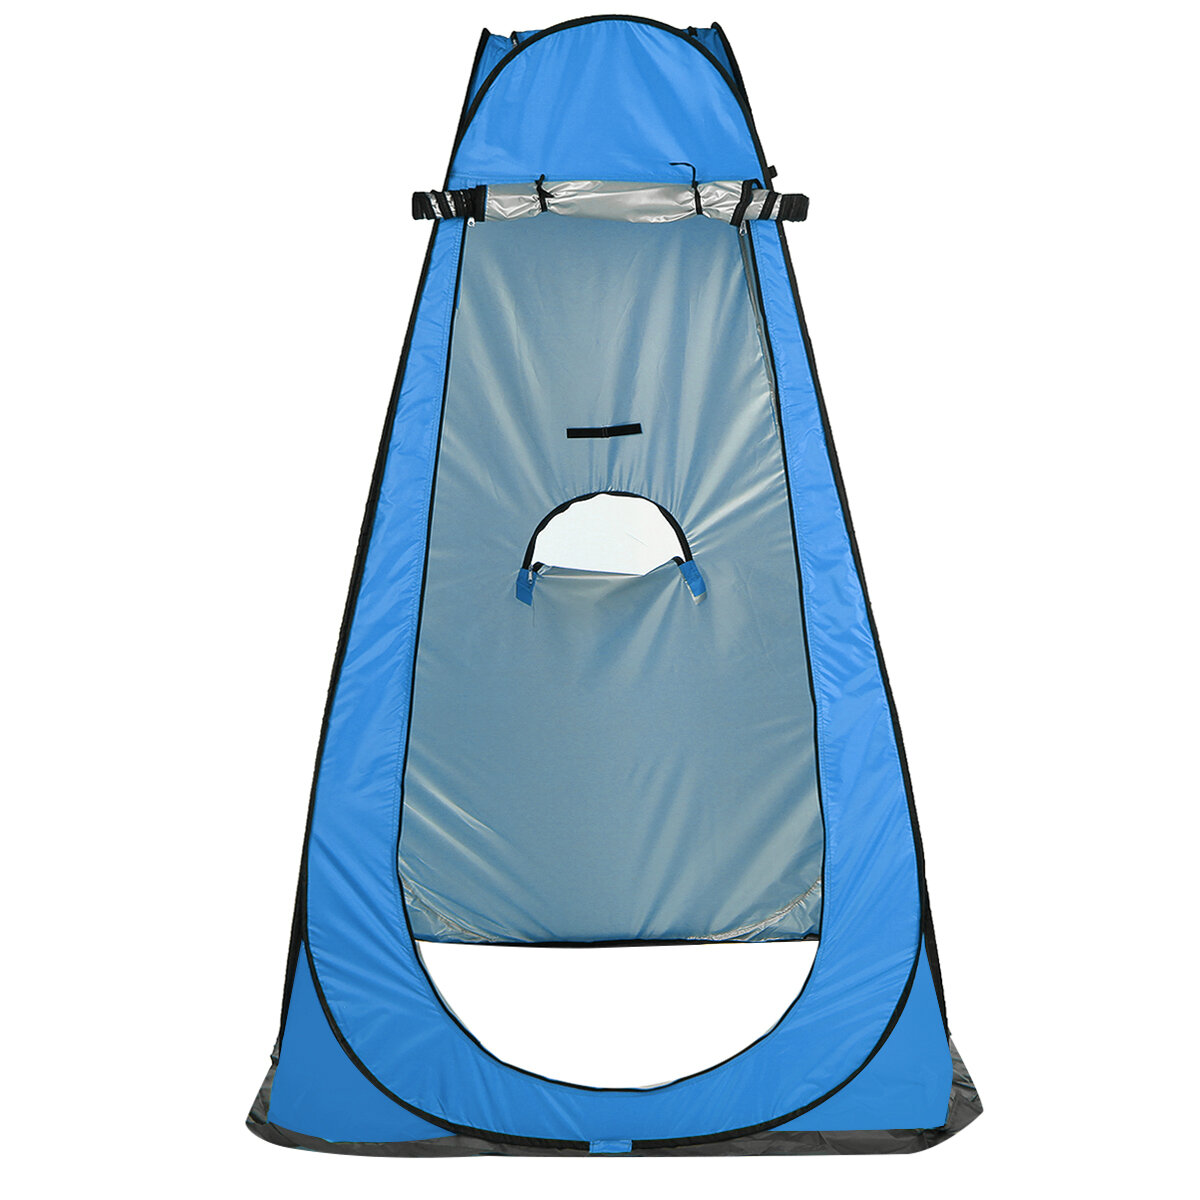 Tenda de camping para chuveiro e banheiro com privacidade, proteção UV e impermeável, dobrável e portátil.